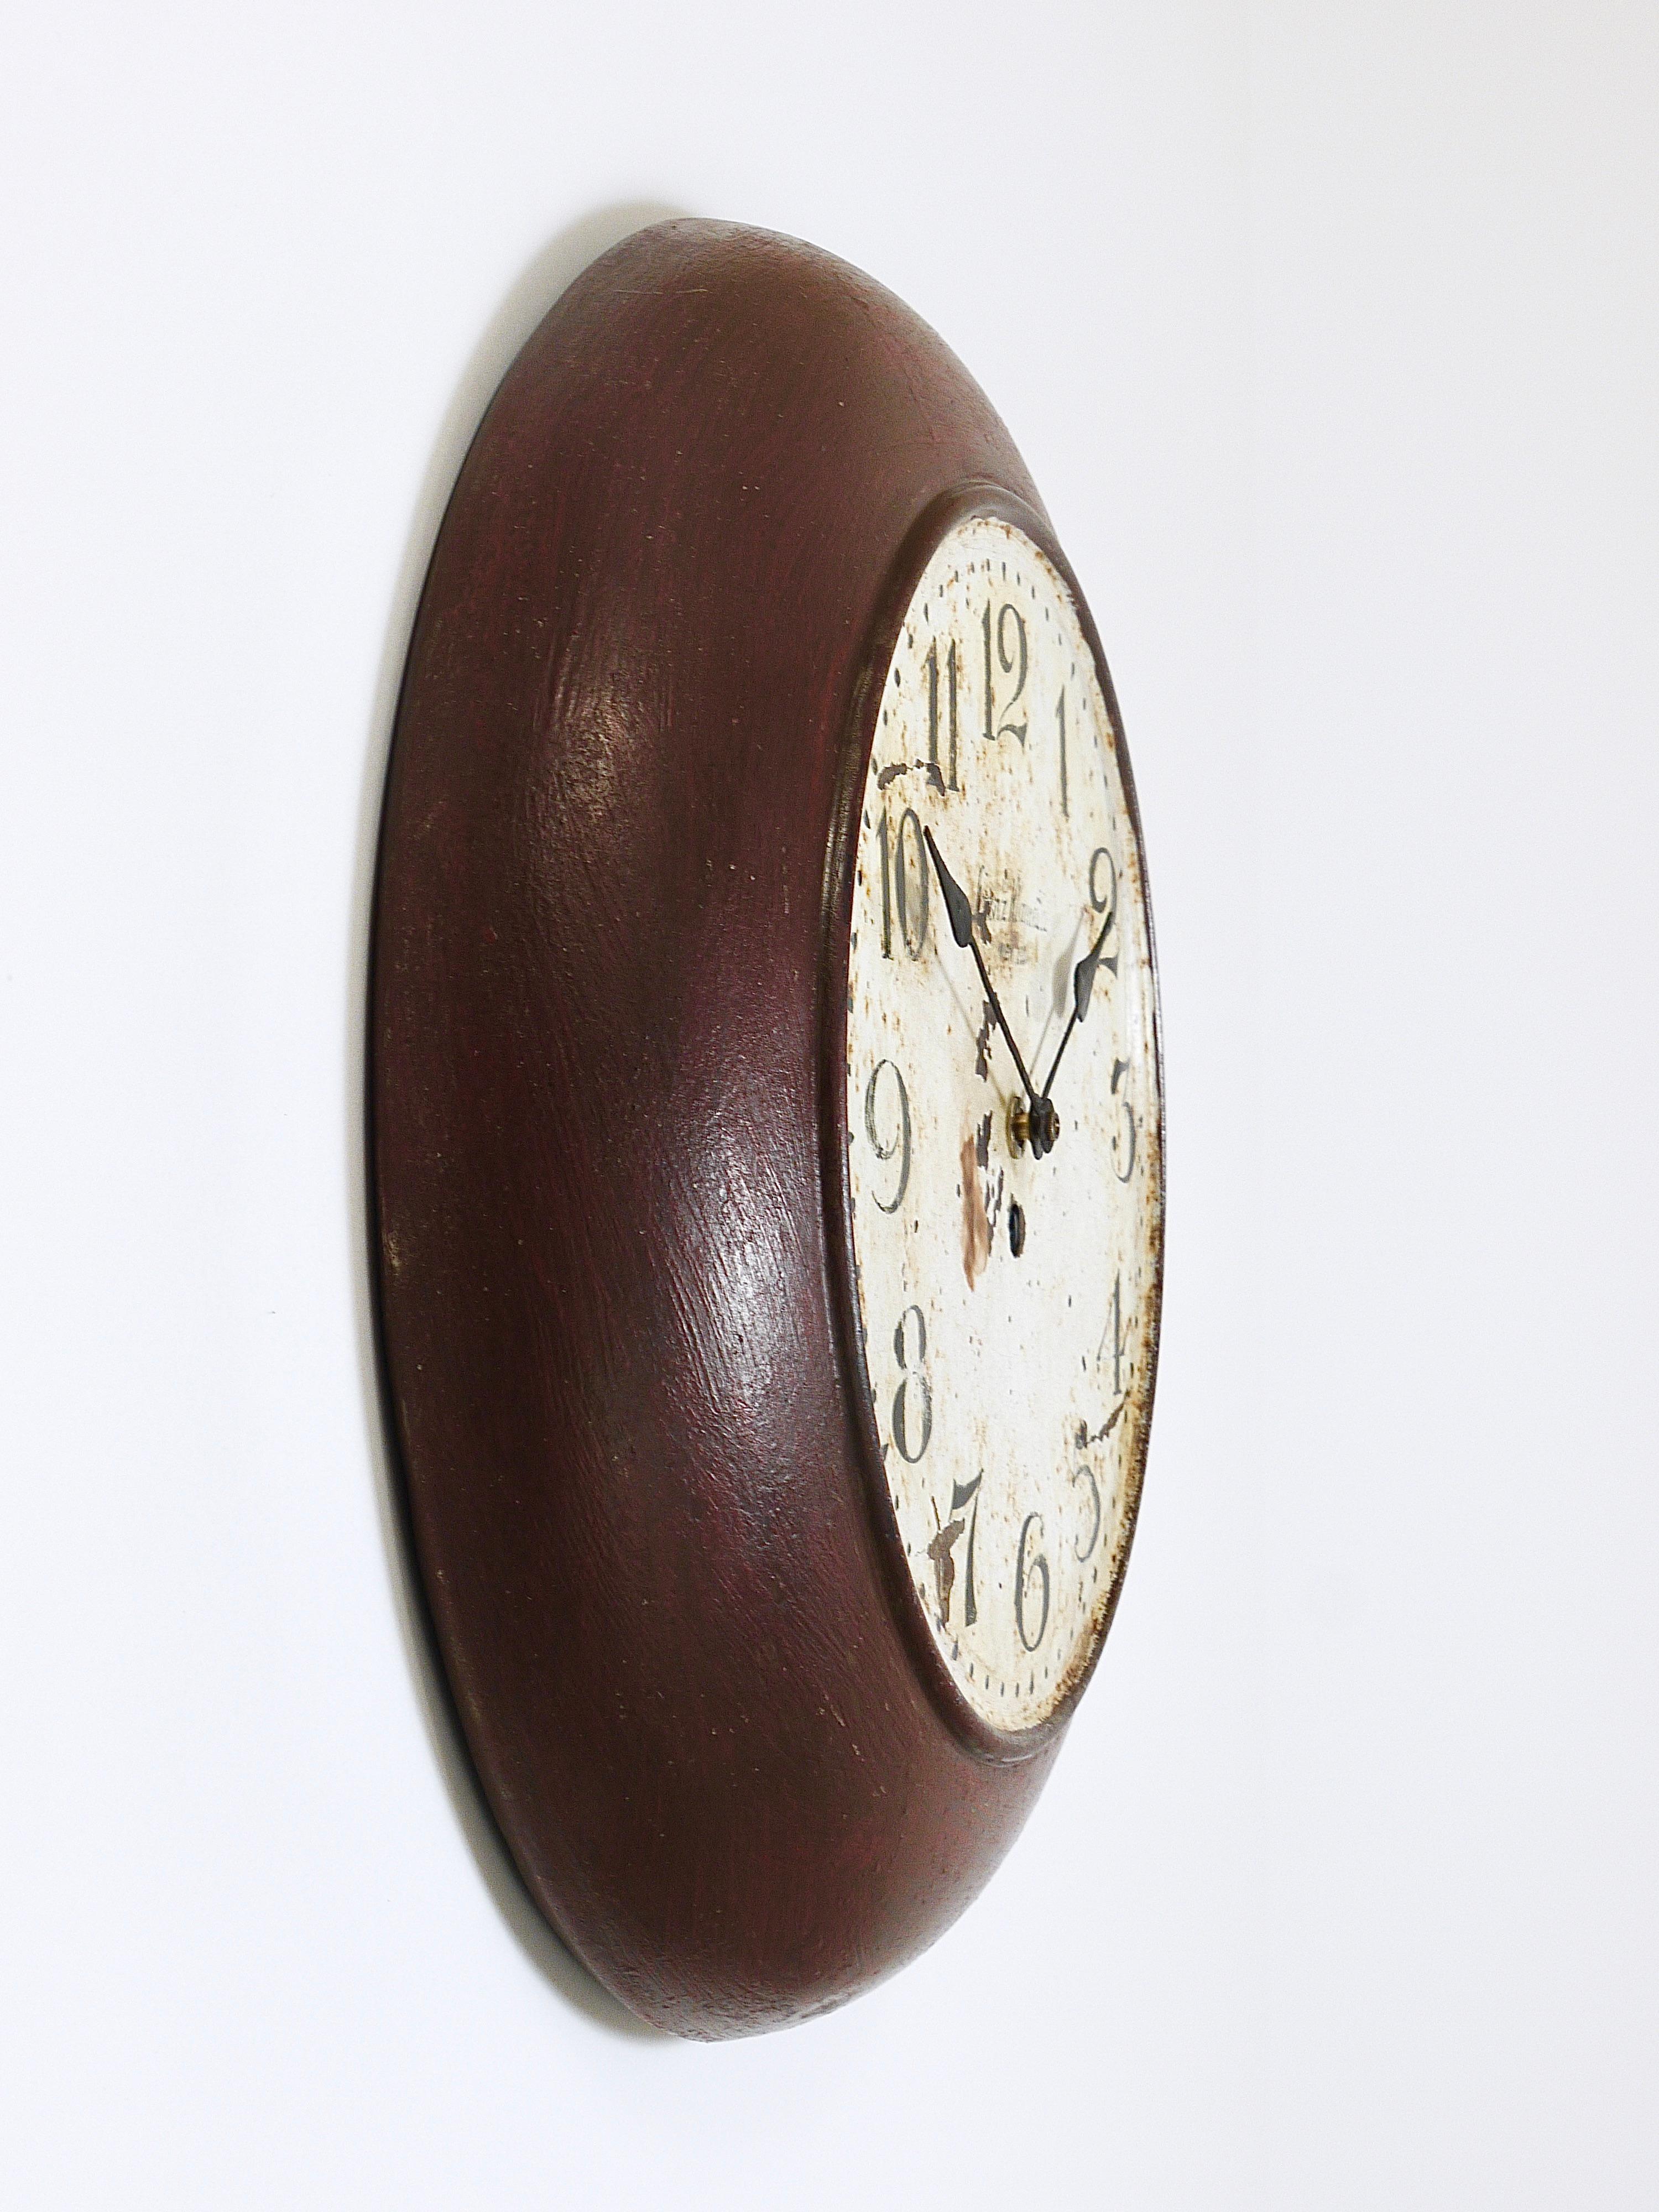 Une horloge murale ancienne de 14,5 pouces de diamètre datant des années 1920, fabriquée par l'horloger Franz Klameth, Vienne, Autriche. Les horloges de ce type étaient à l'origine utilisées dans les bureaux publics, les usines ou les gares.